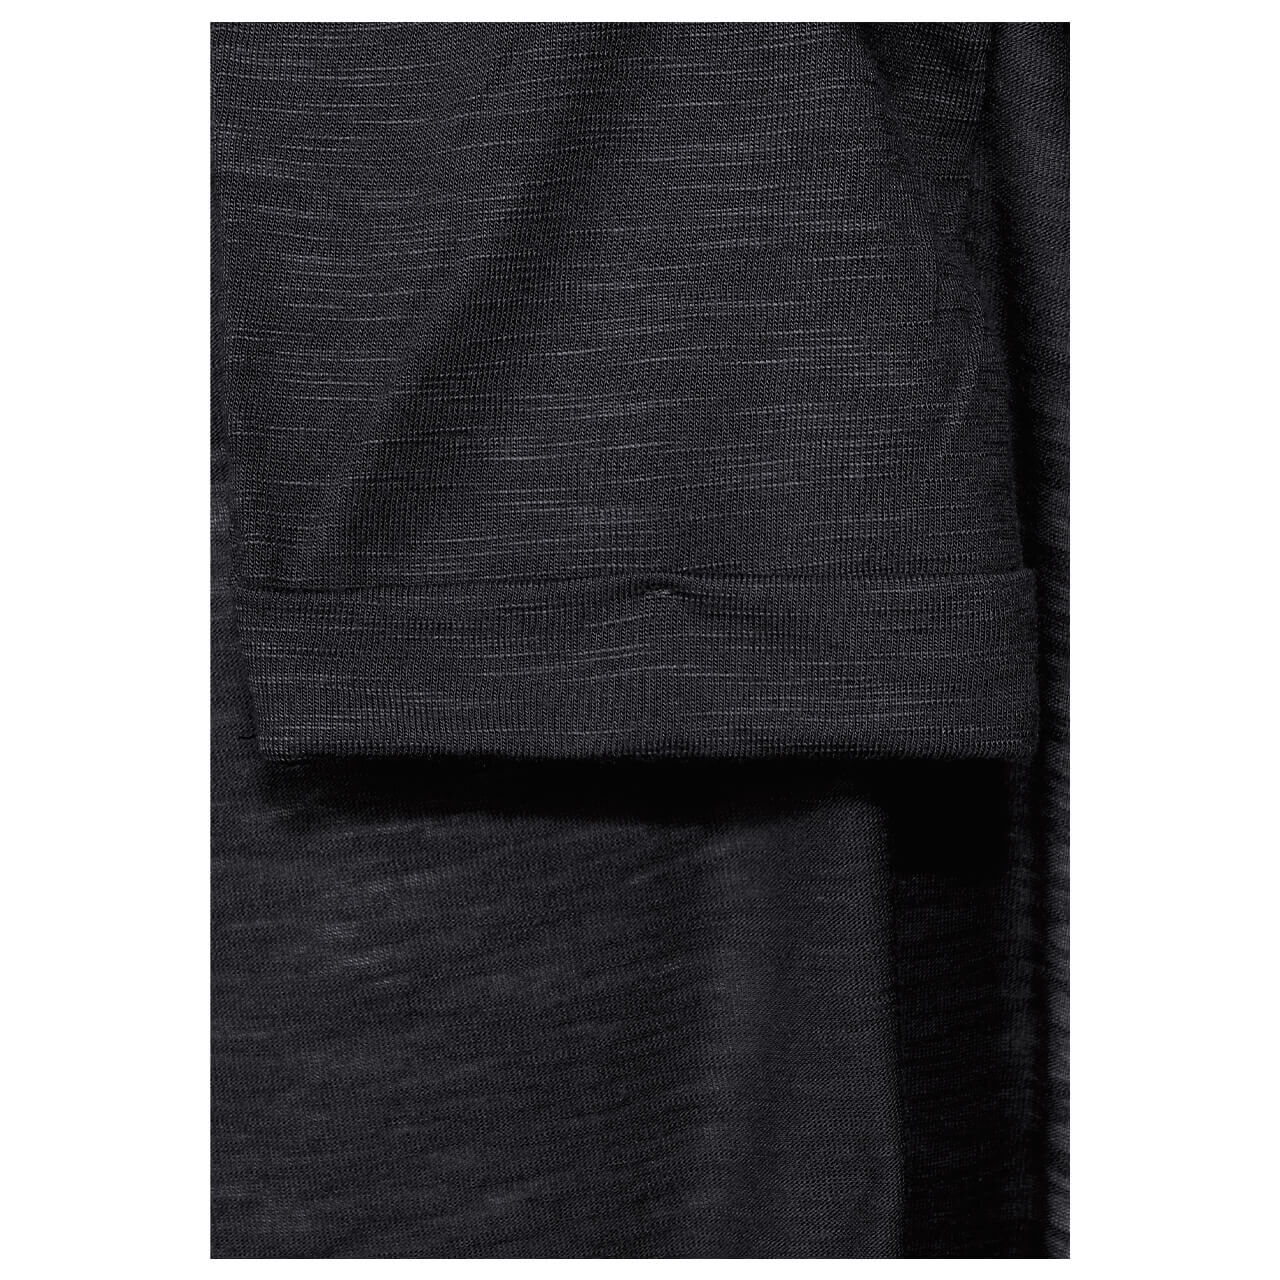 Cacil Open T-Shirtjacket 3/4 Arm Strickjacke für Damen in Dunkelgrau meliert, FarbNr.: 12538